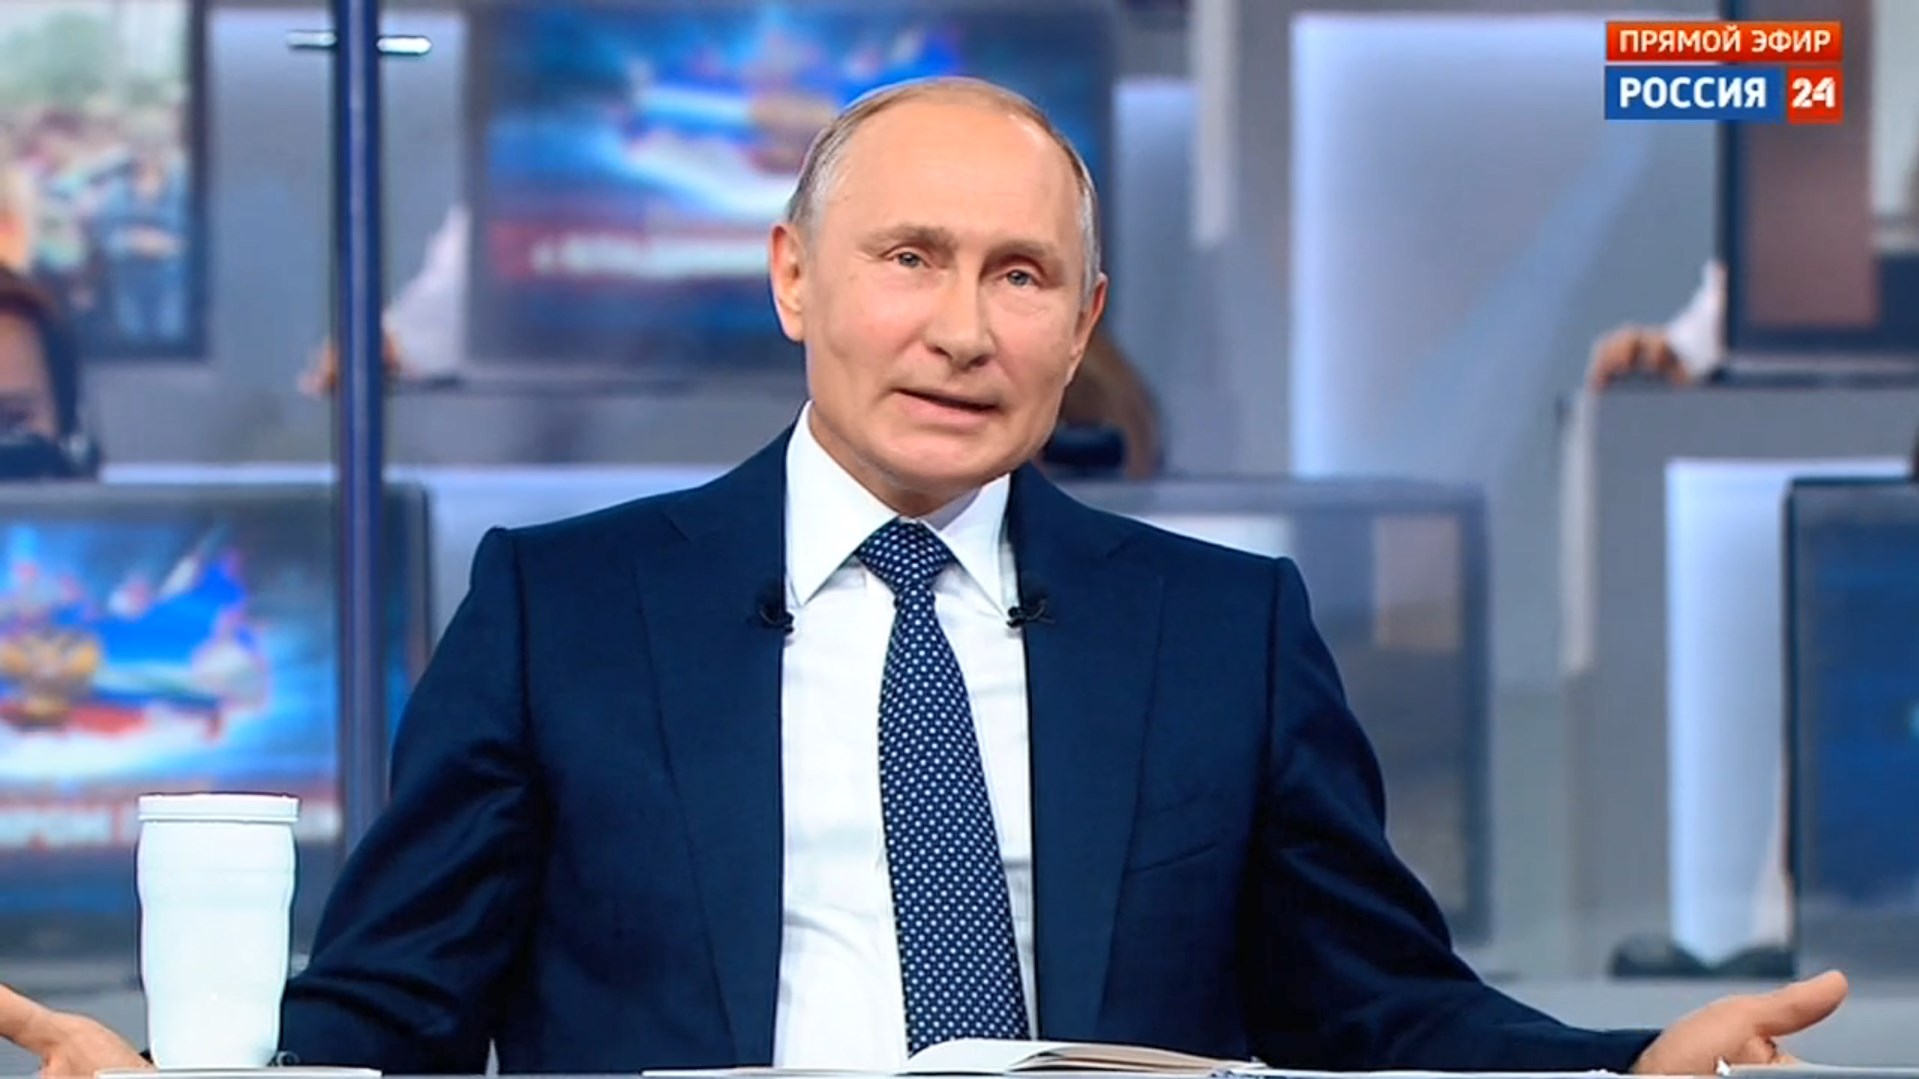 О зарплатах, преемнике и ценах на бензин: Владимир Путин 4 часа отвечал на вопросы россиян